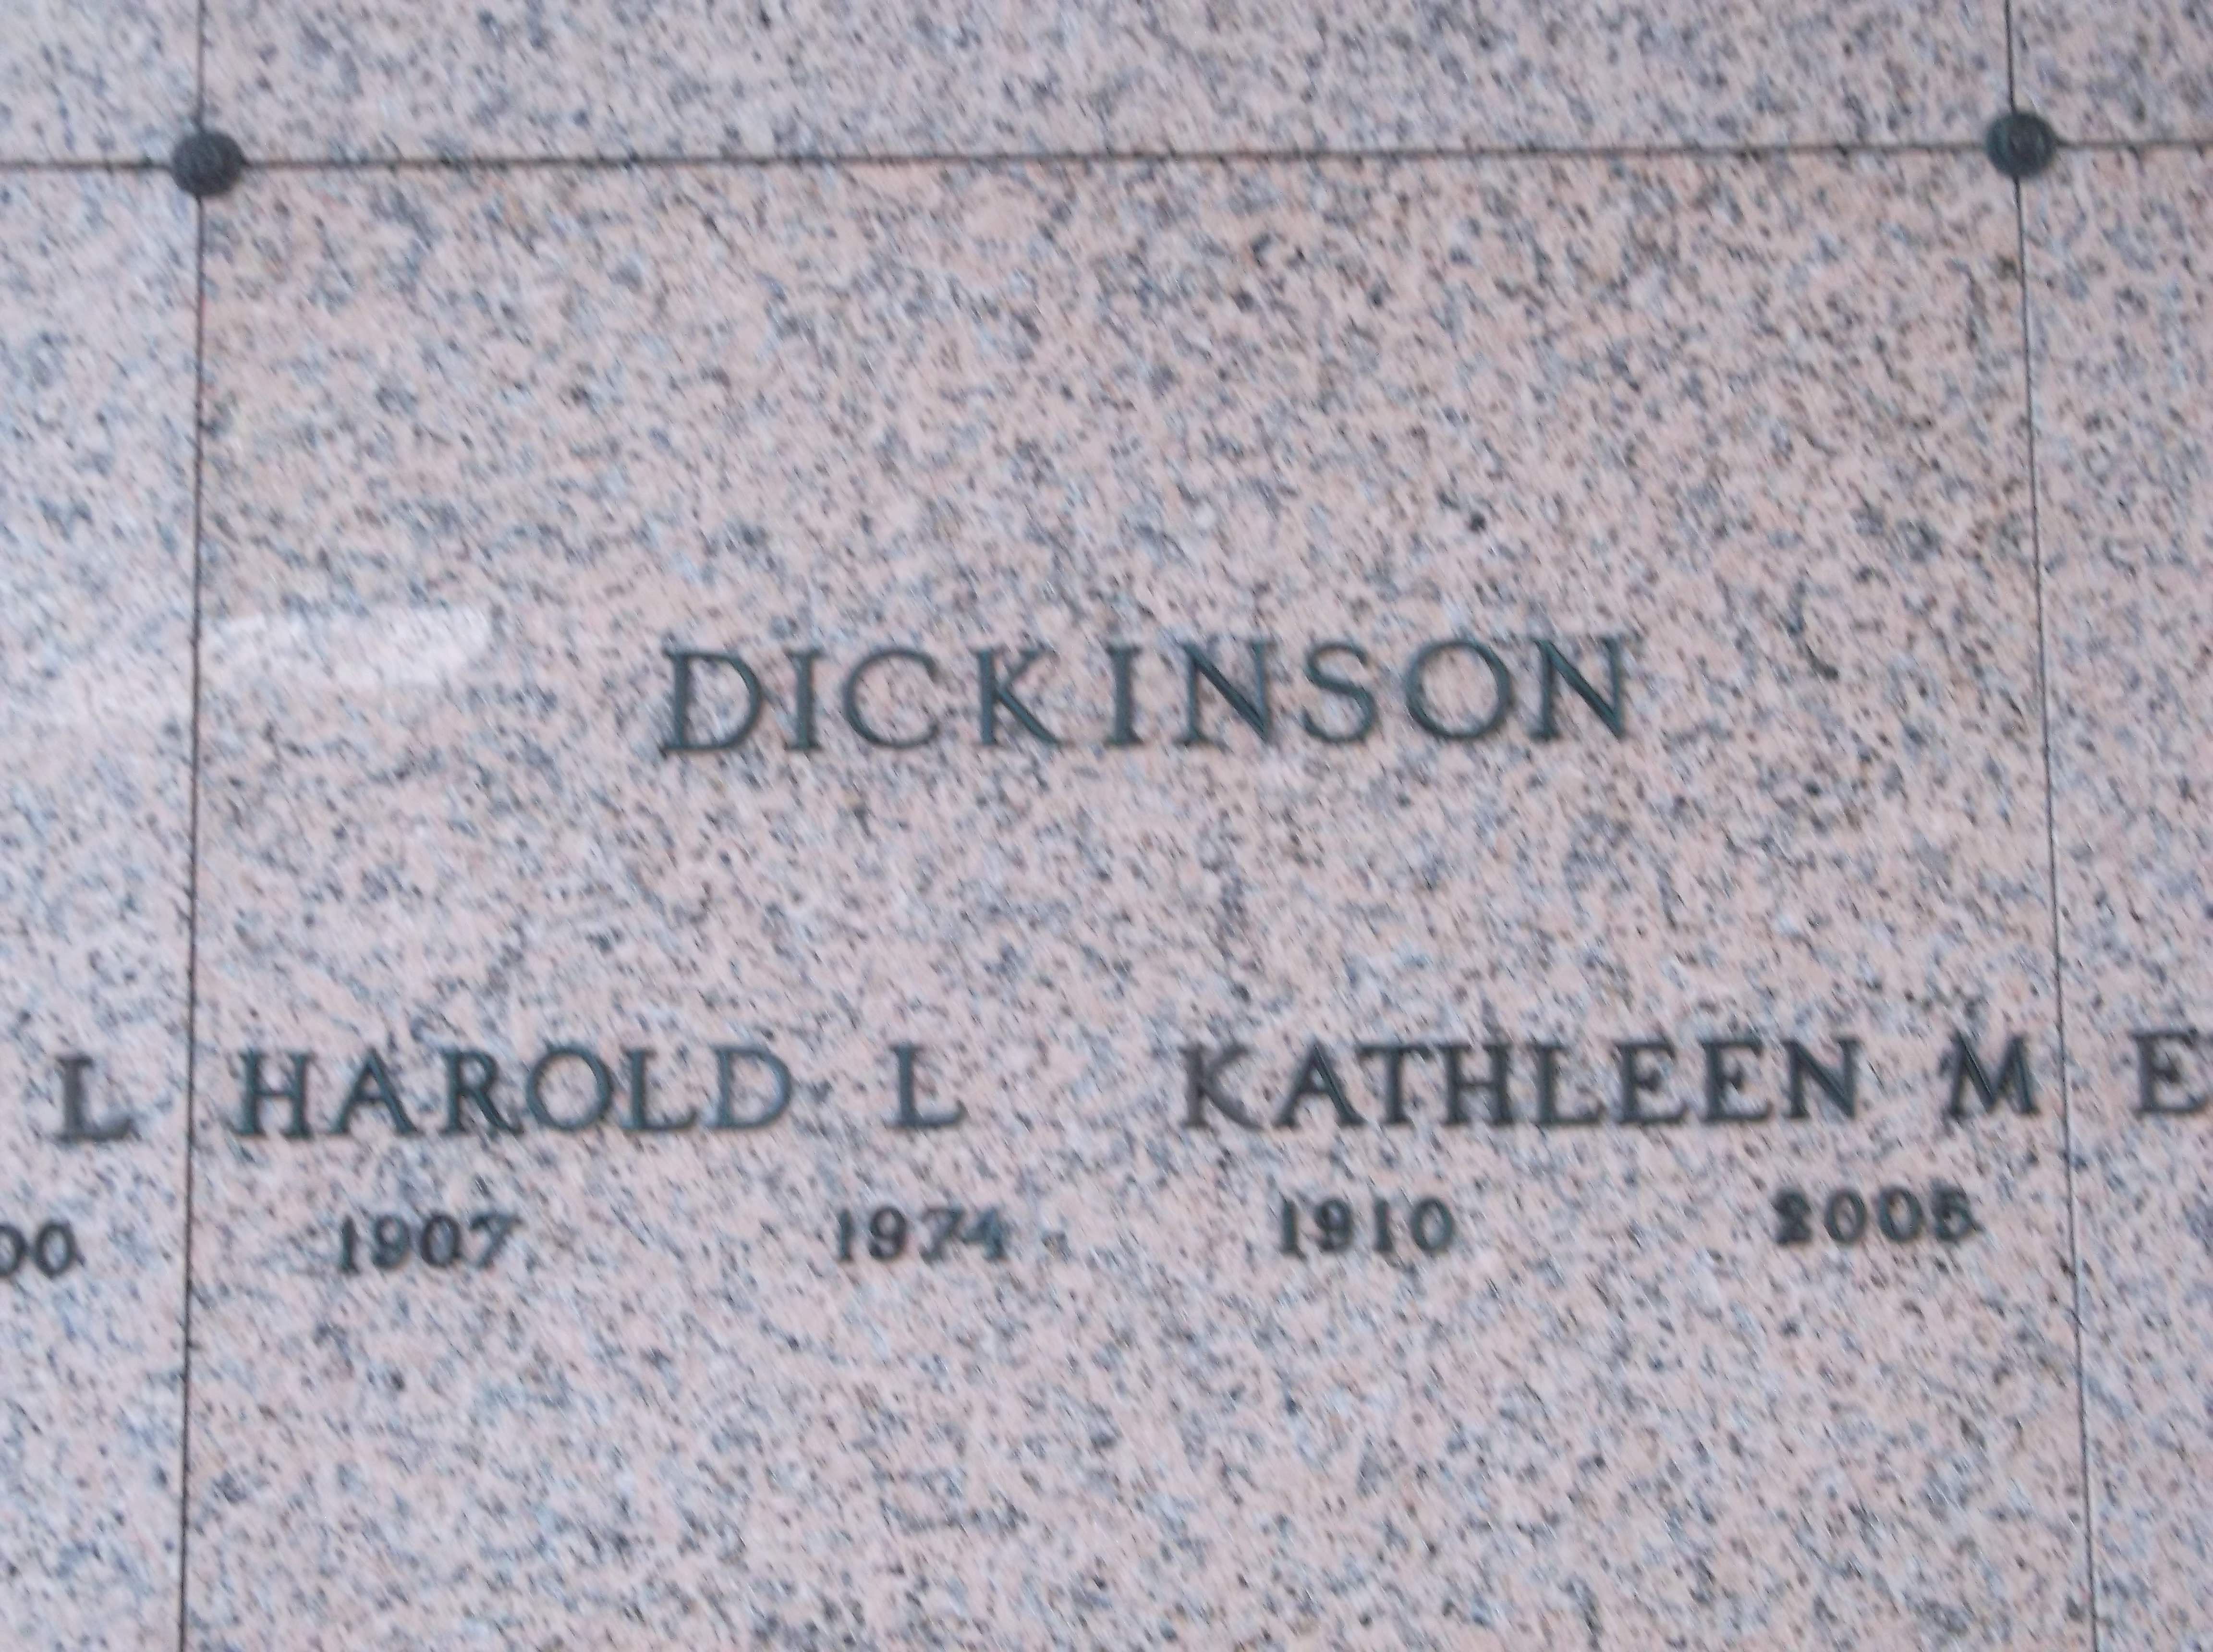 Harold L Dickinson